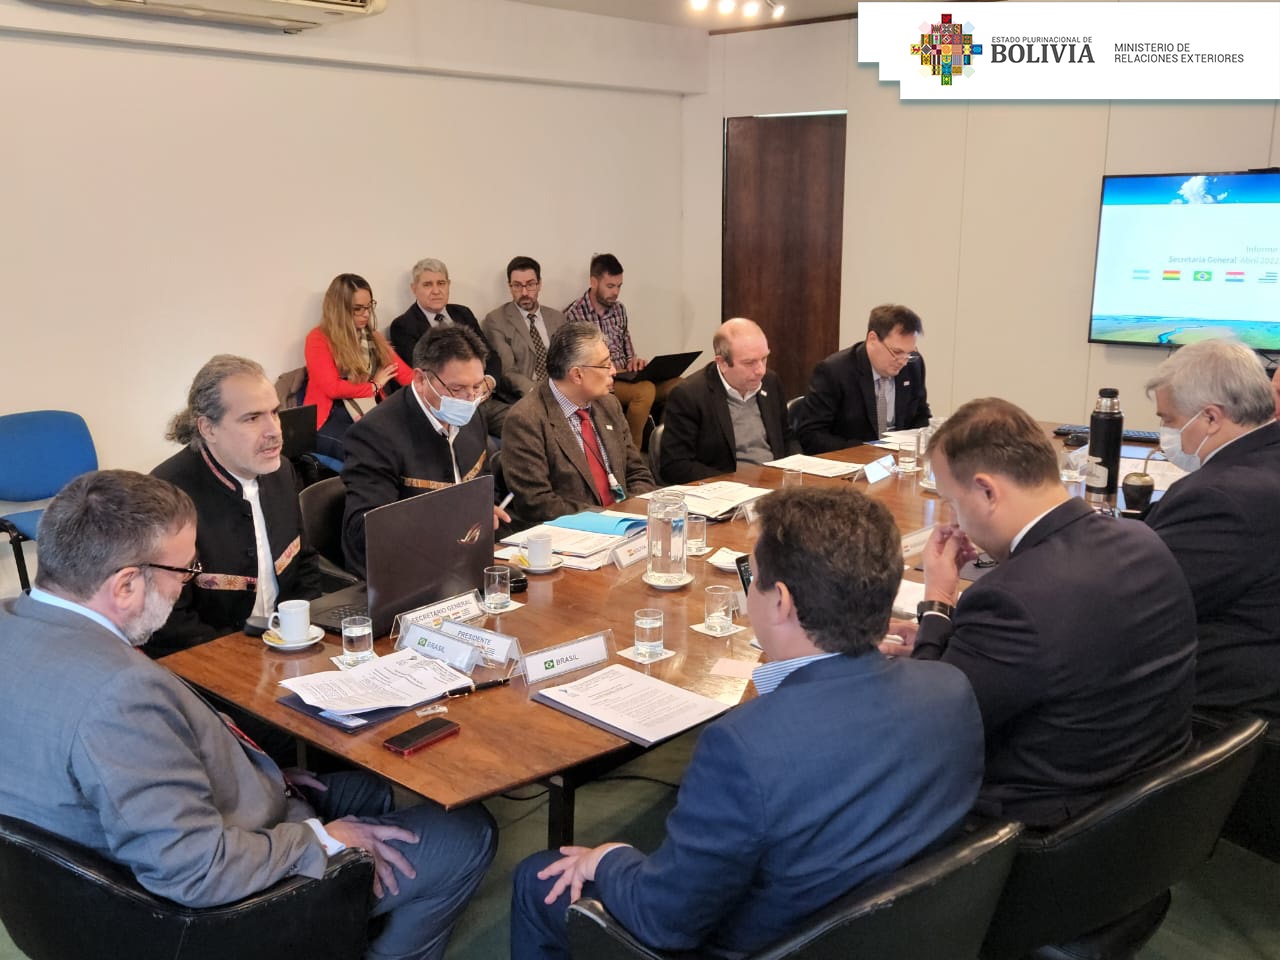 Cuenca del Plata:  Viceministerio de Relaciones Exteriores es parte del debate en el Comité Intergubernamental Coordinador (CIC)